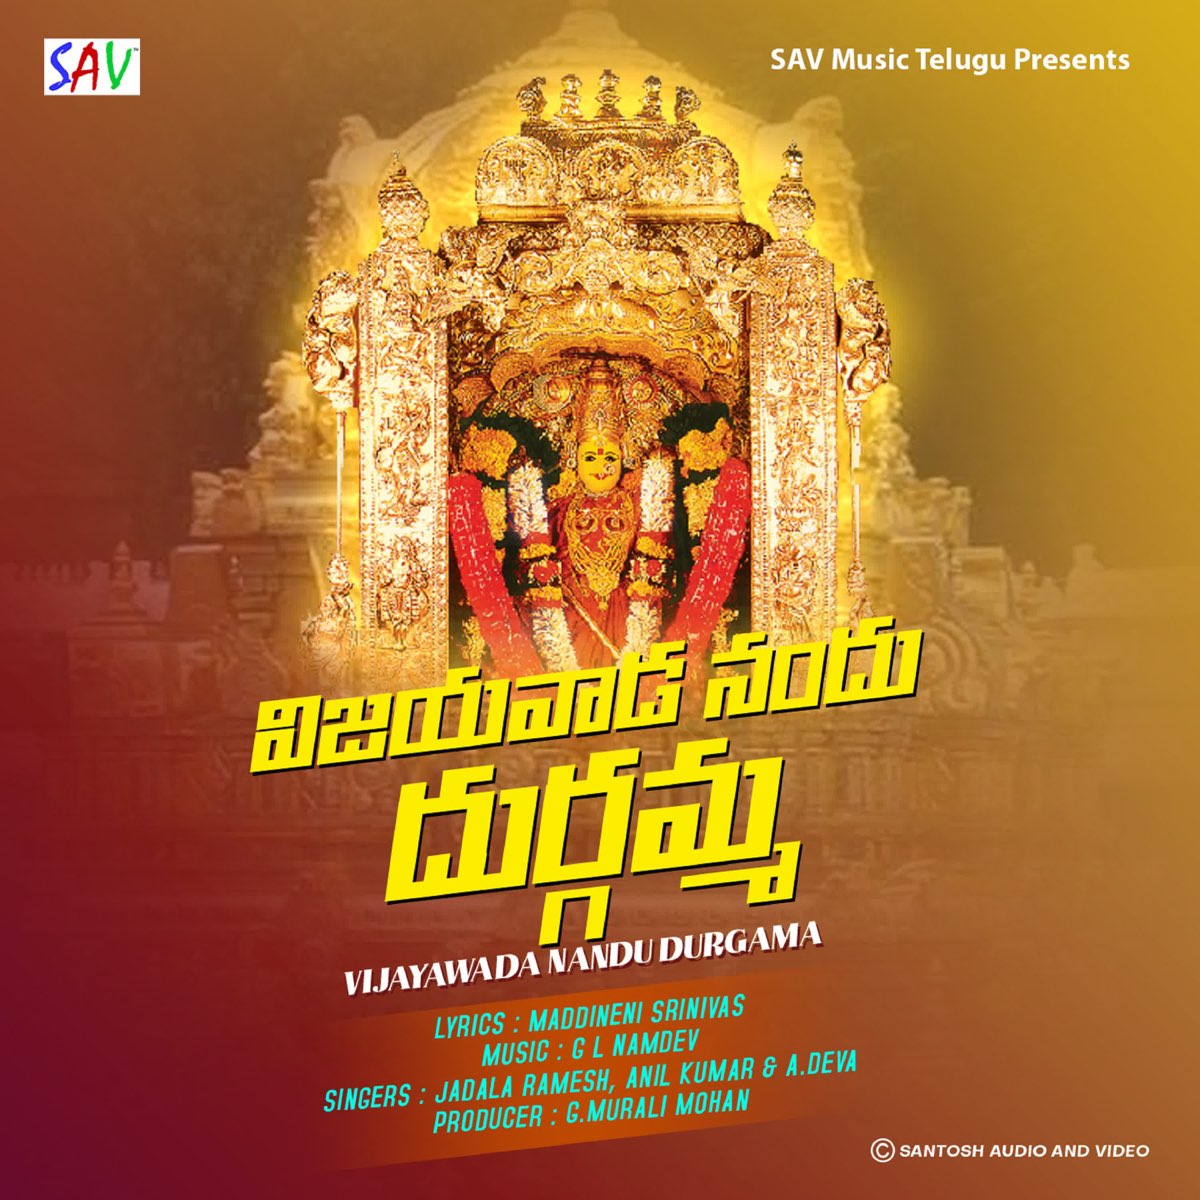 Vijayawada Nandu Durgama - Single by Jadala Ramesh, Anil Kumar ...